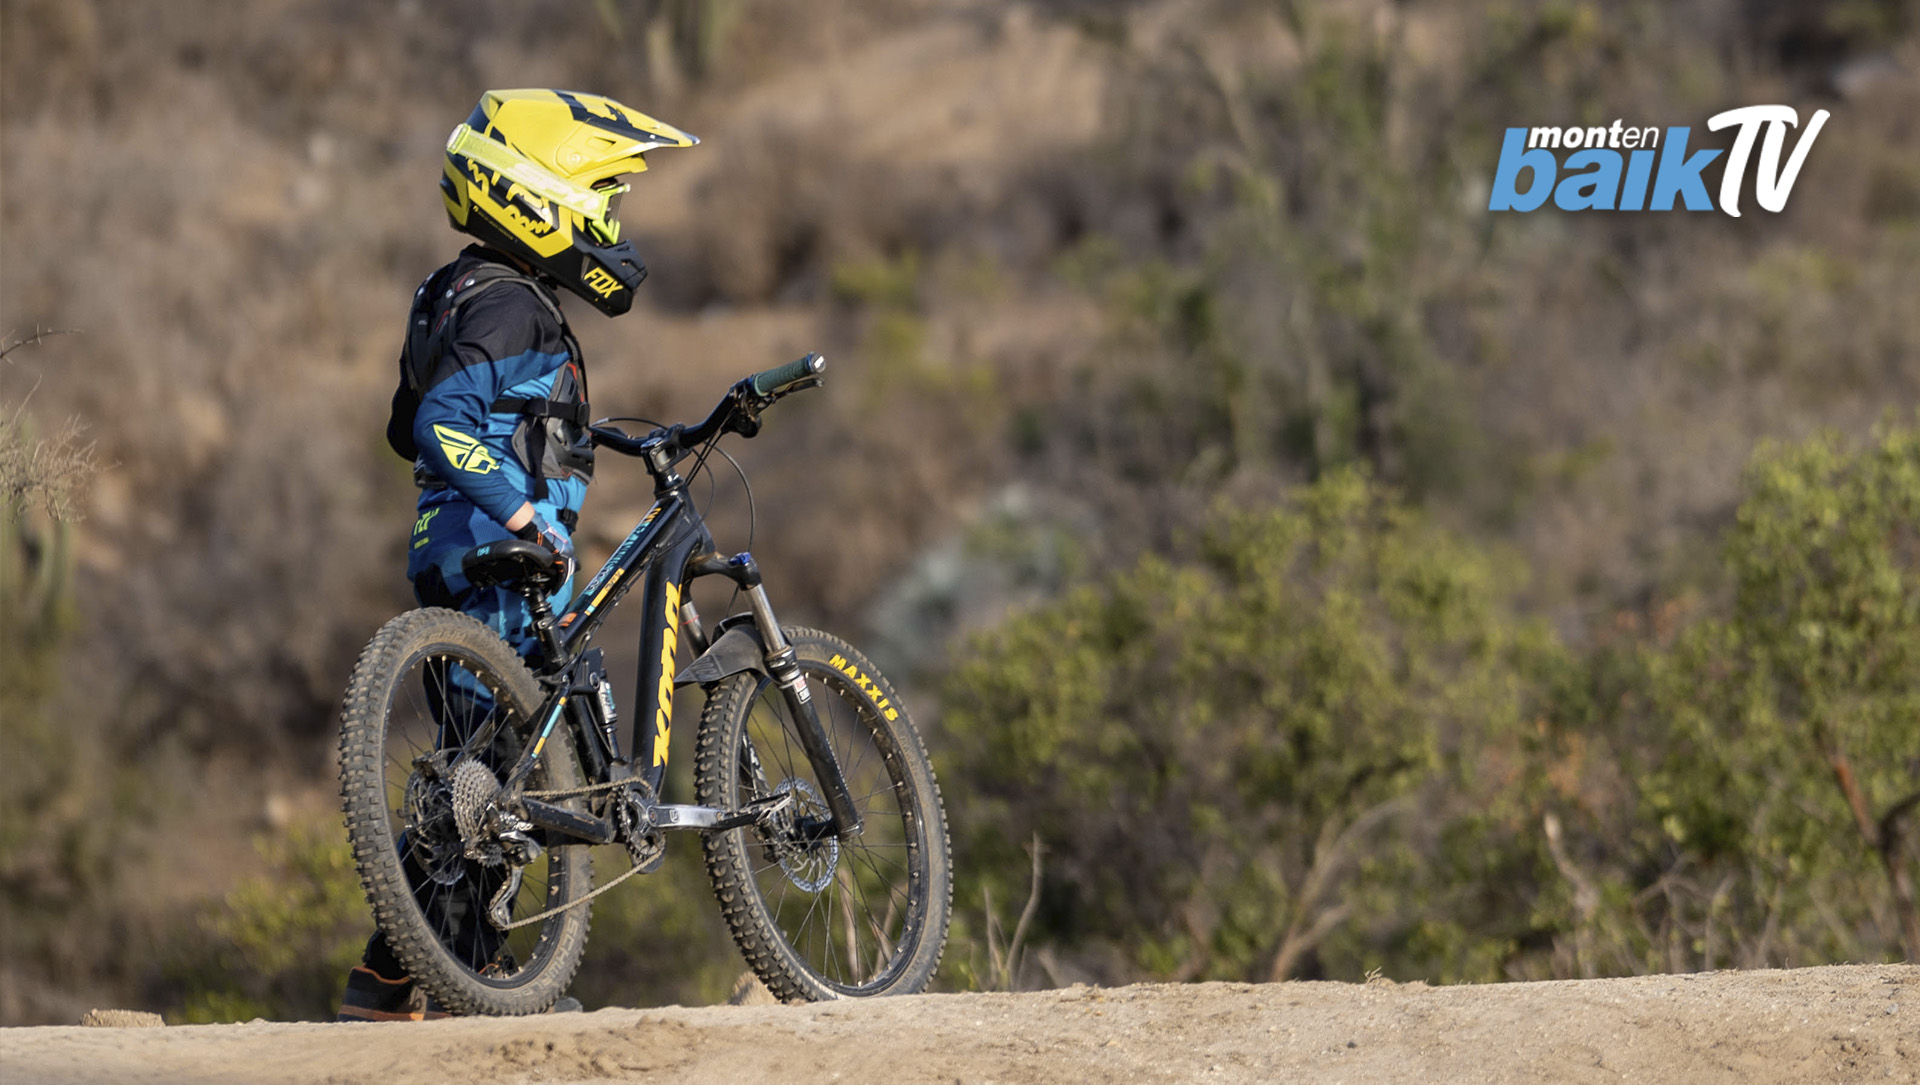 Montenbaik  Principal web del Mountain Bike en Español. Encuentra los  mejores videos y fotos de MTB, las tendencias, tecnología y test de los  productos actuales. · Miércoles de Mecánica :: #28